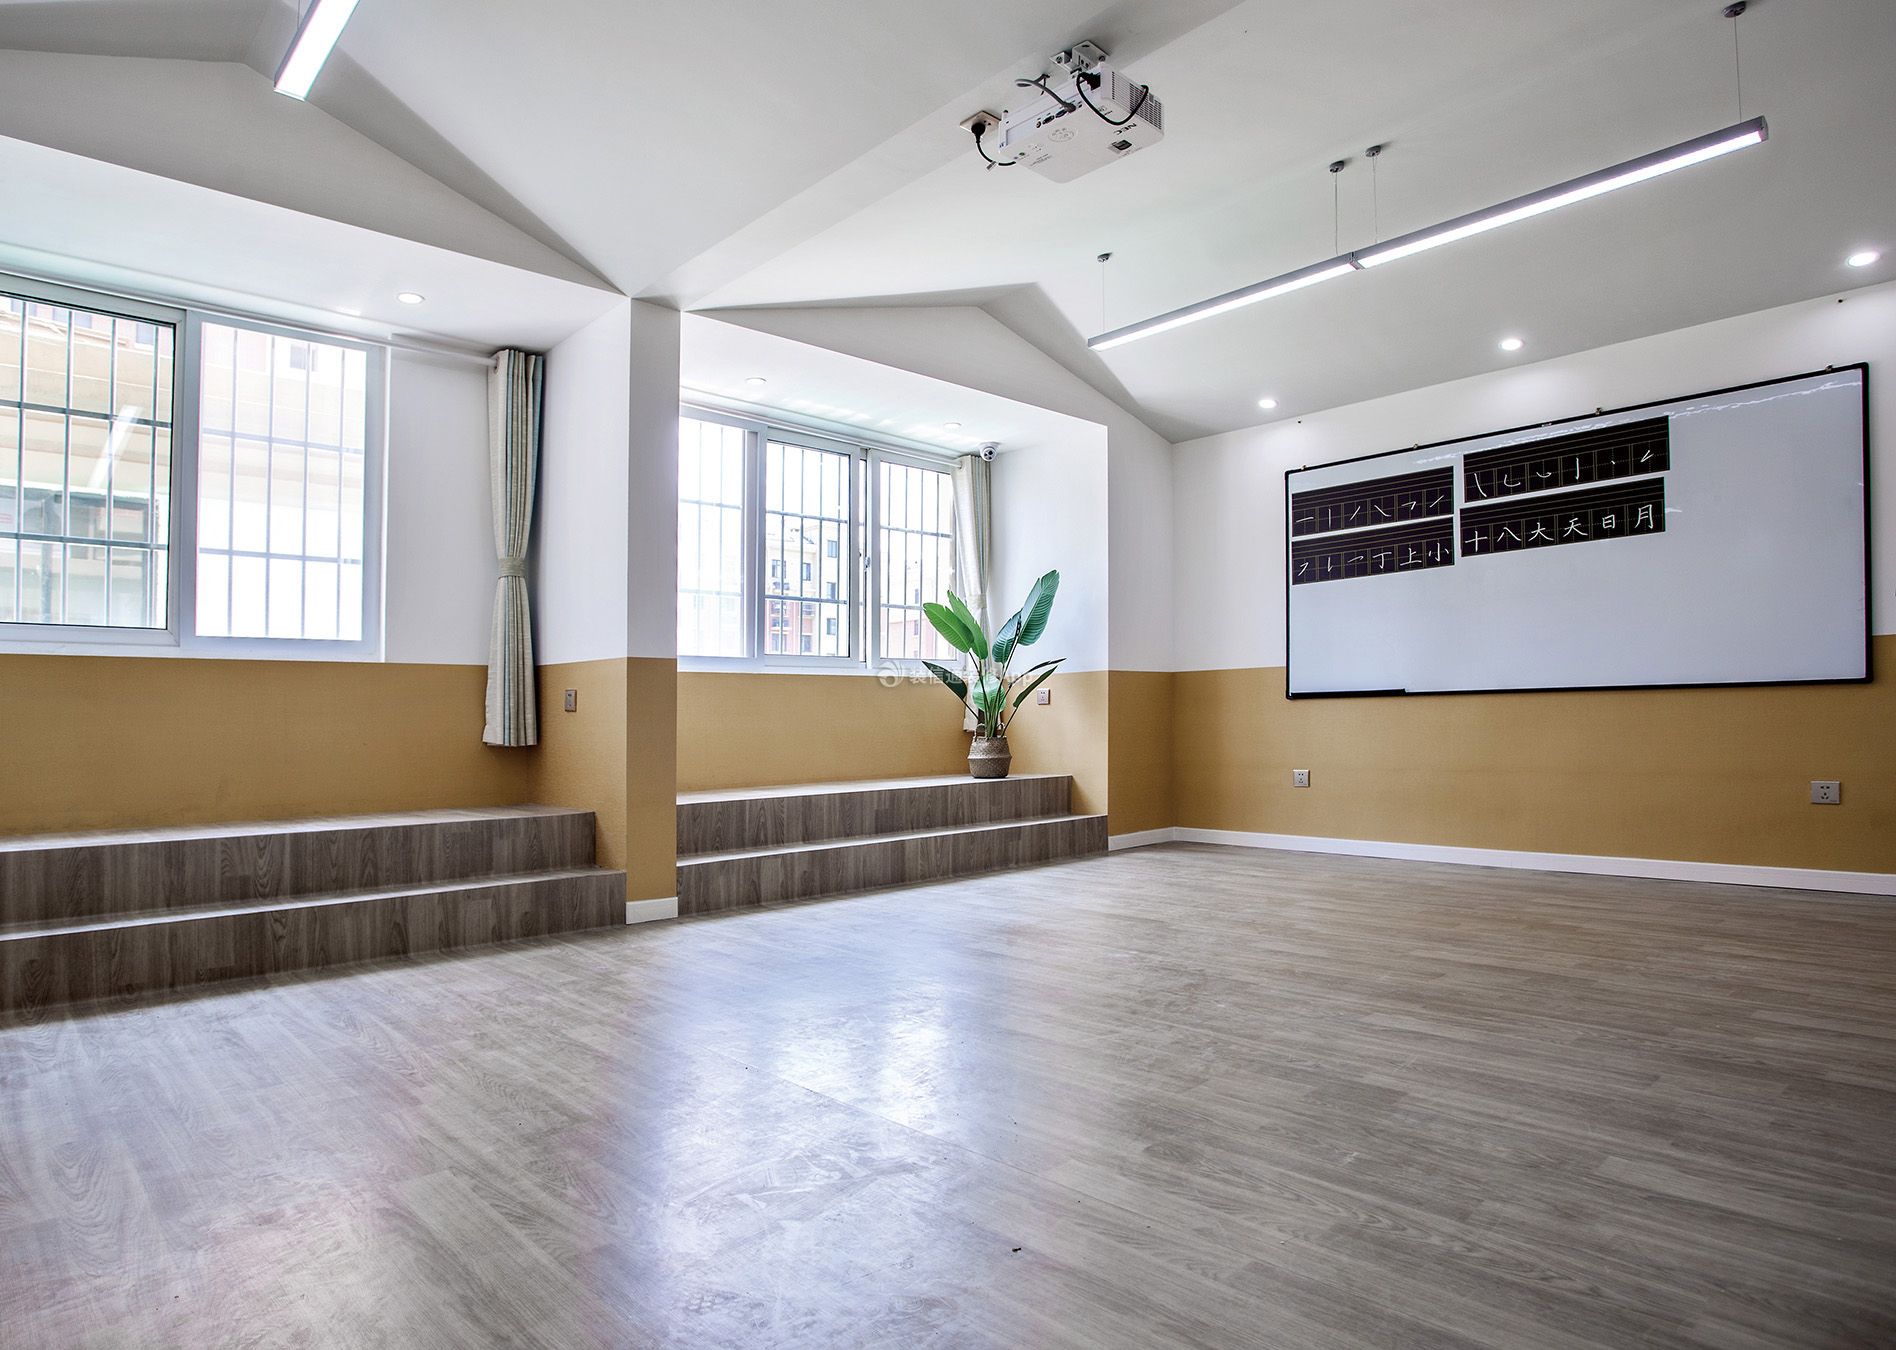 深圳简约风格幼儿园教室木地板装修效果图